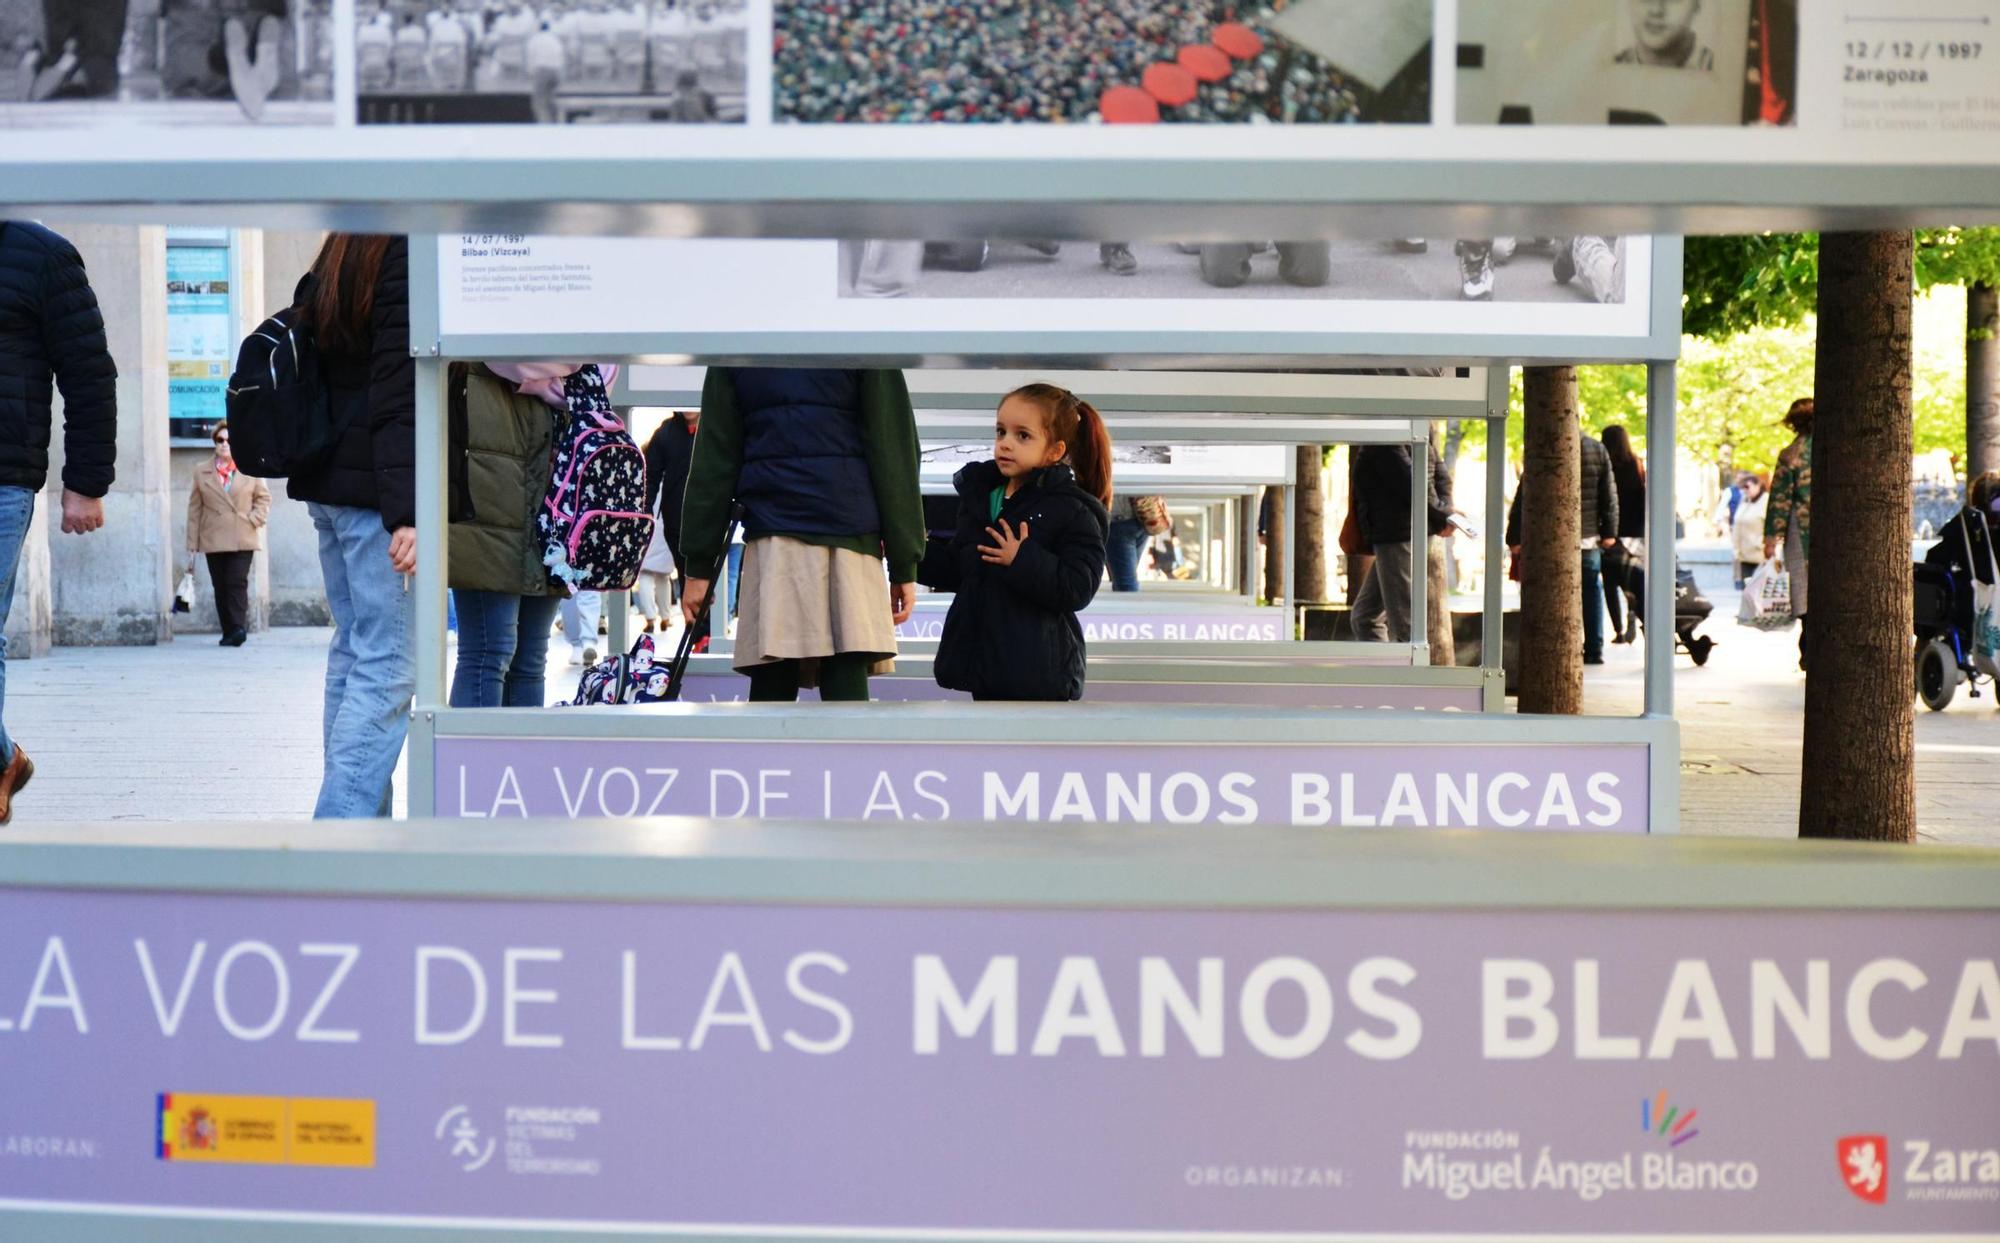 EN IMÁGENES | Zaragoza acoge la exposición 'La voz de las manos blancas', en homenaje a las víctimas de ETA